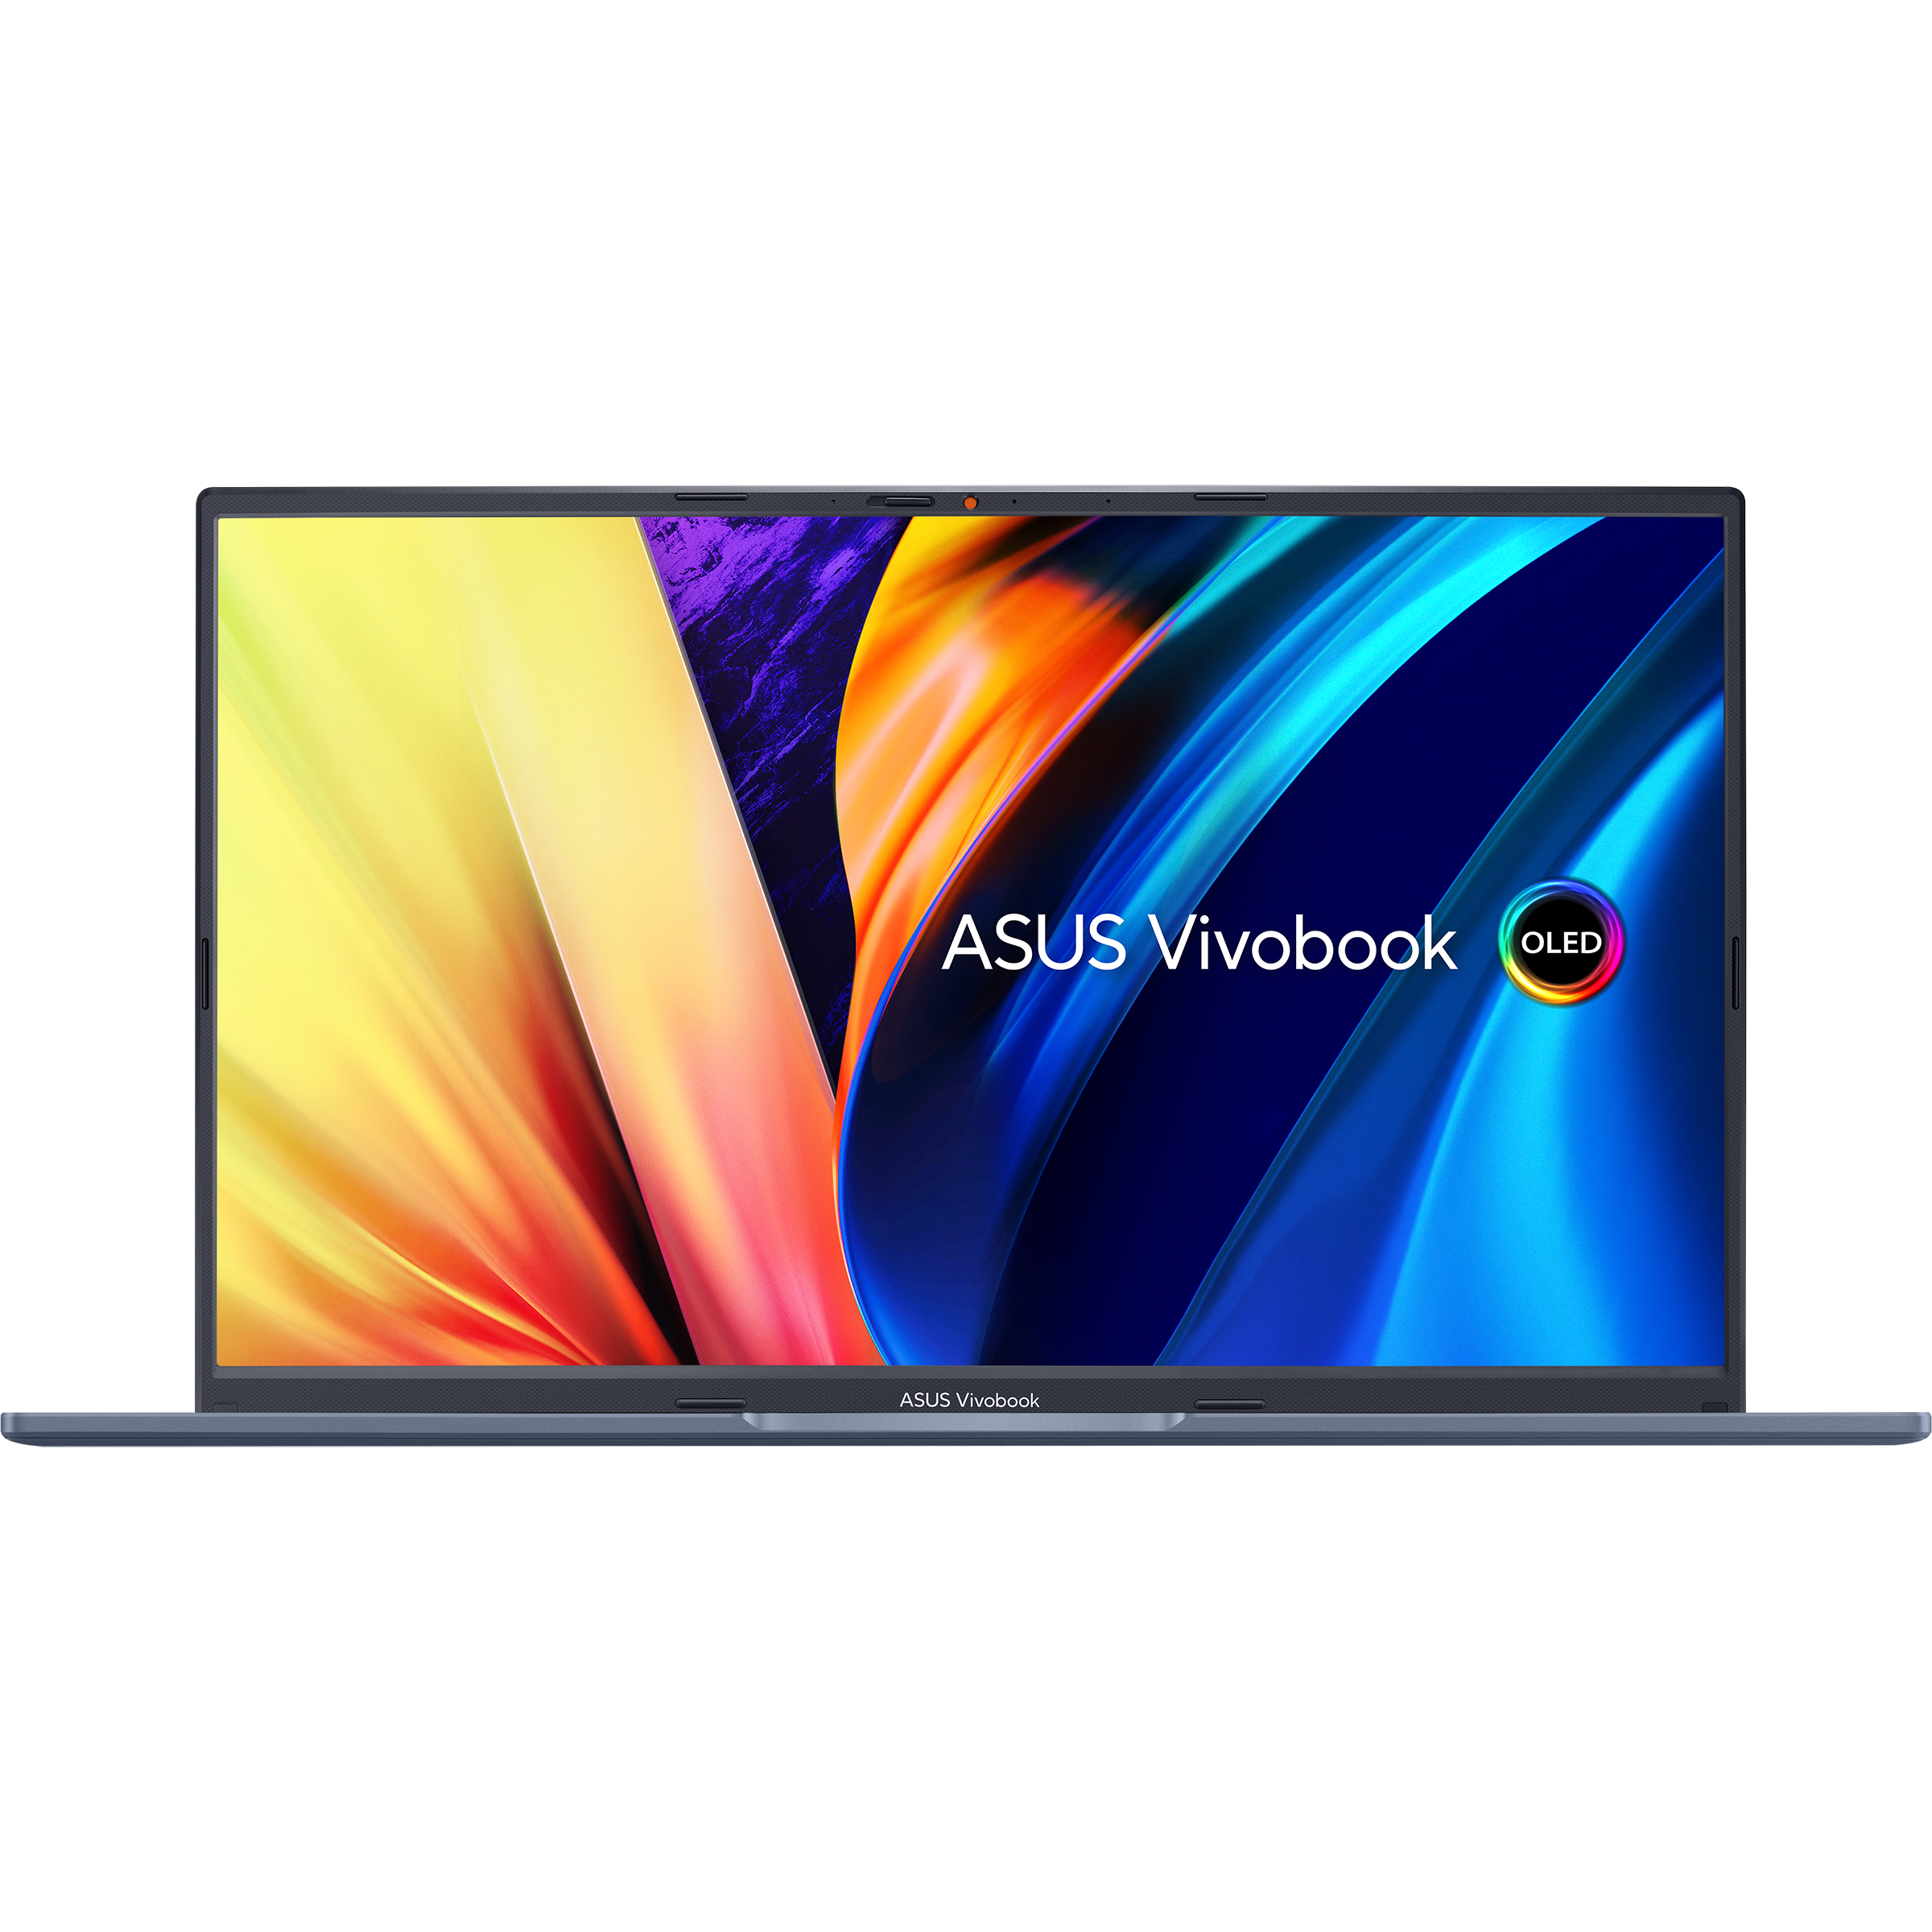 Vivobook 15X OLED: Hãy cùng trải nghiệm màn hình OLED trên chiếc laptop ASUS Vivobook 15X OLED. Với độ phân giải cao, khả năng hiển thị màu sắc chân thực và hệ thống âm thanh toả ra xuống phía dưới, bạn sẽ có được trải nghiệm xem phim tuyệt vời nhất trong suốt cuộc đời. Bên cạnh đó, hiệu suất vượt trội cùng các tính năng tiên tiến sẽ giúp bạn hoàn thành công việc dễ dàng hơn bao giờ hết.